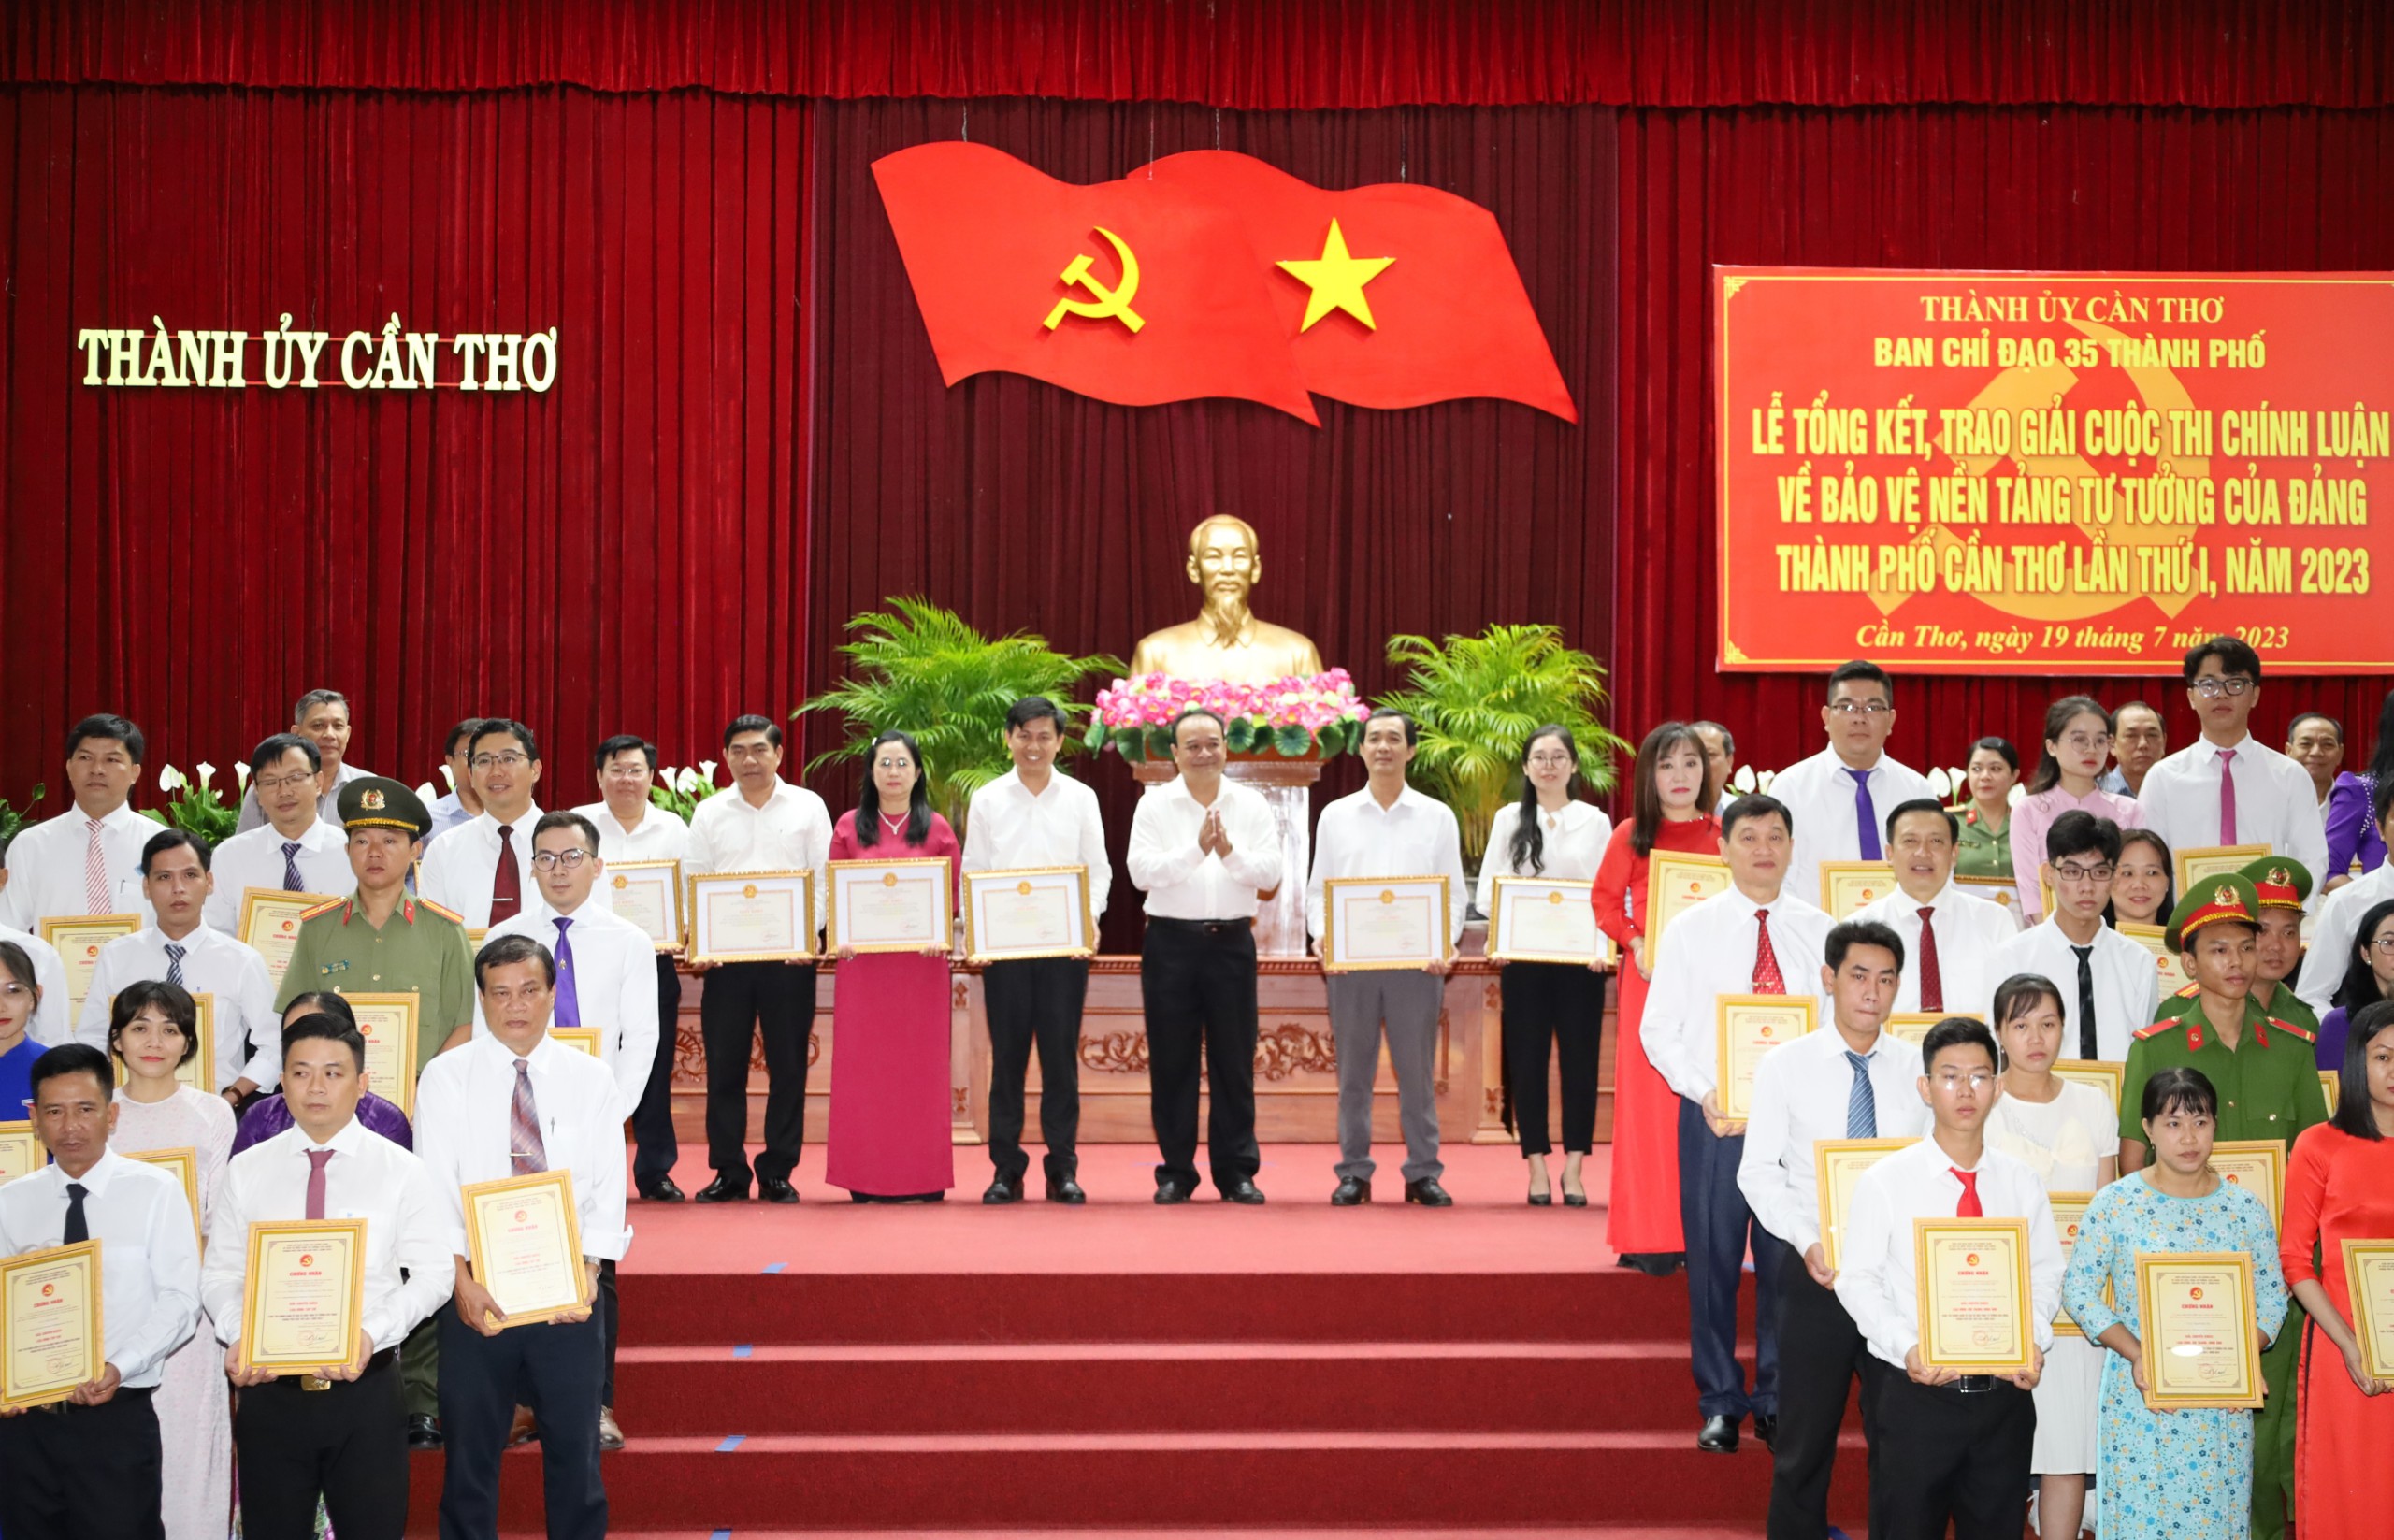 Ông Nguyễn Ngọc Tâm – UV BTV Thành ủy, Trưởng ban Tuyên giáo Thành ủy Cần Thơ - Phó trưởng Ban Thường trực Ban Chỉ đạo Cuộc thi trao tặng giấy khen cho các đơn vị.